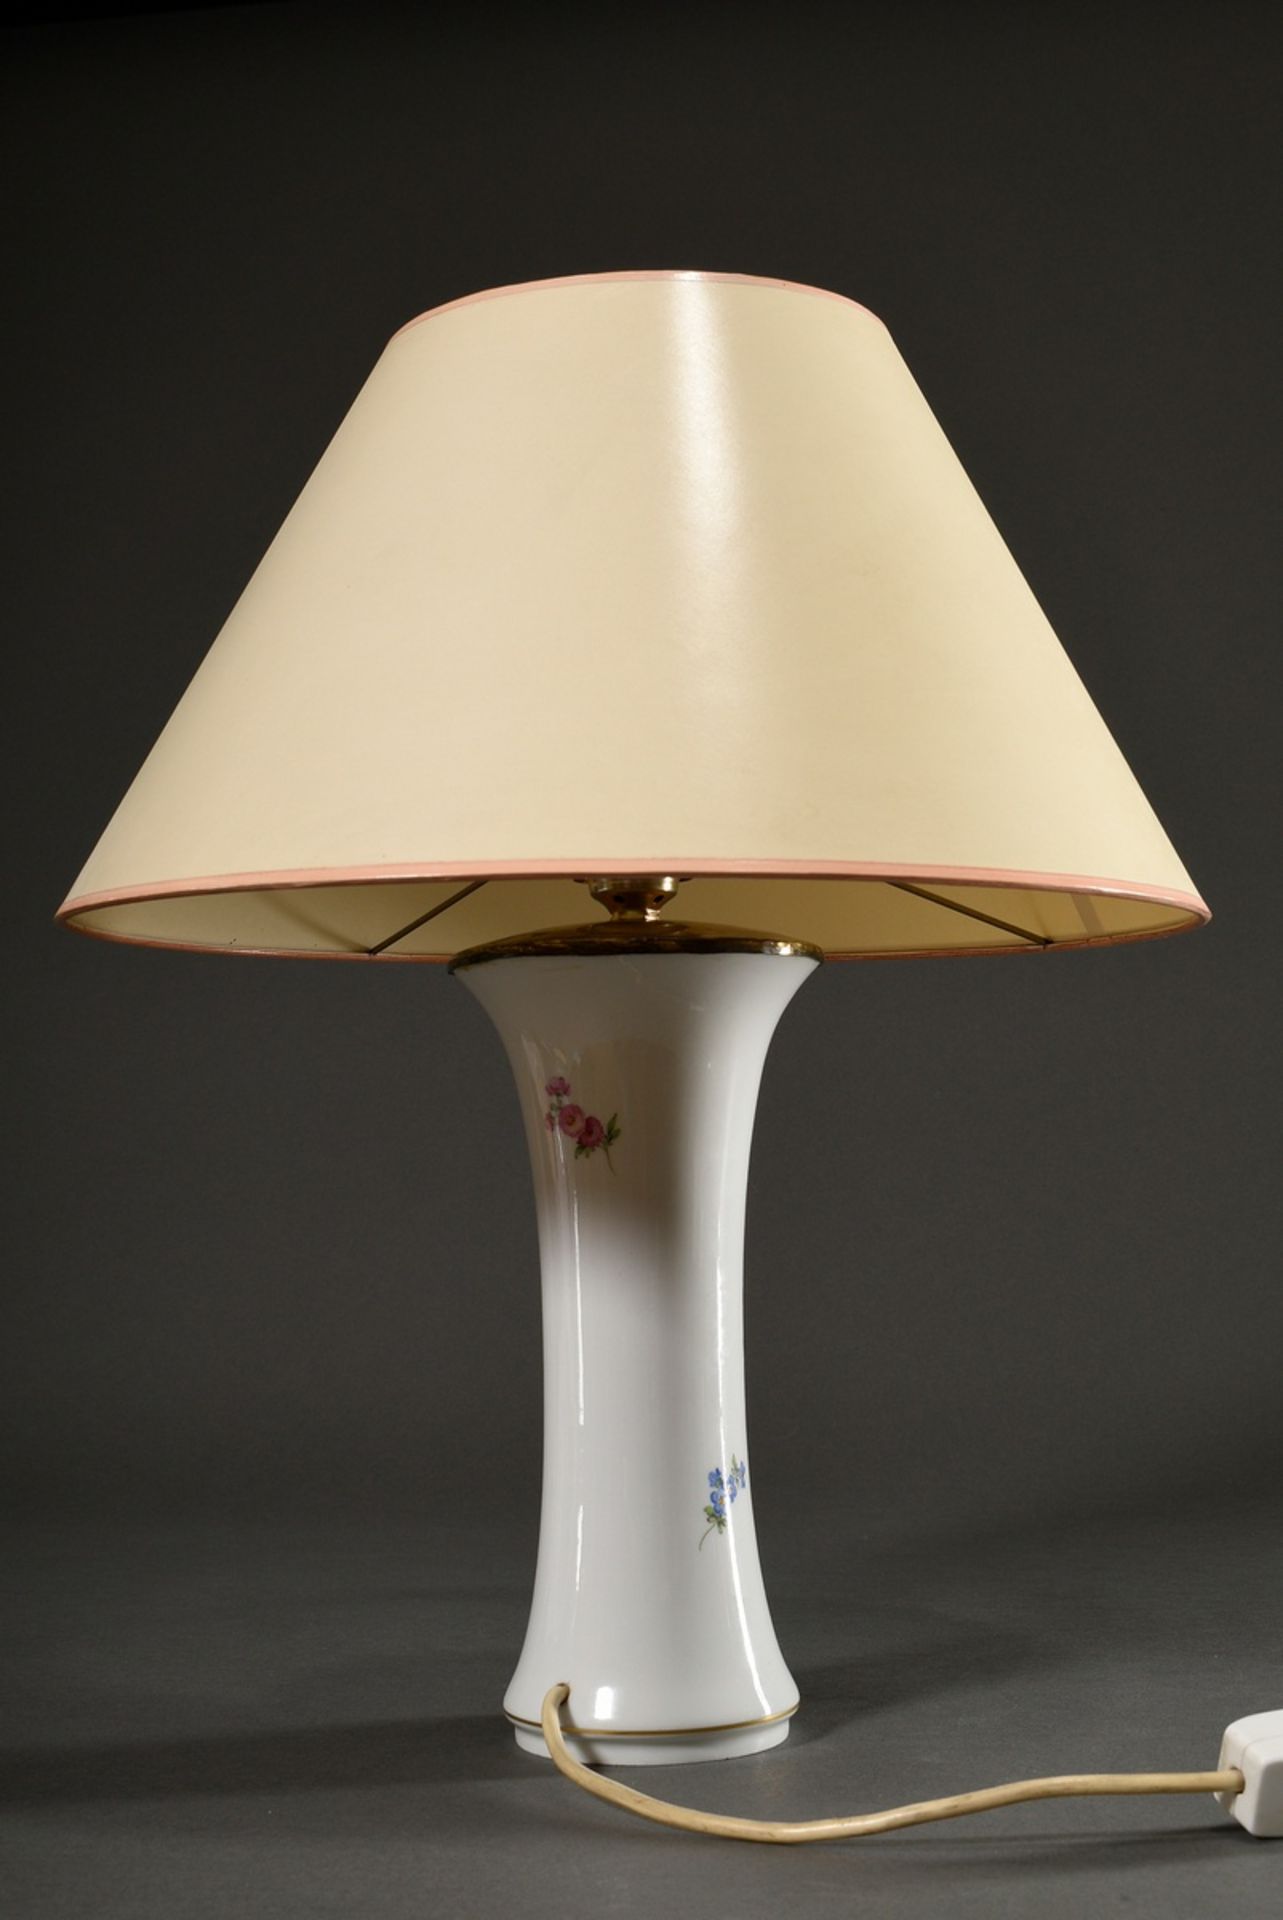 Meissen Lampe mit polychromer Malerei „Deutsche Blume“, Modellnr.: 480, Formernr.: 28, Malernr.: 46 - Bild 3 aus 4